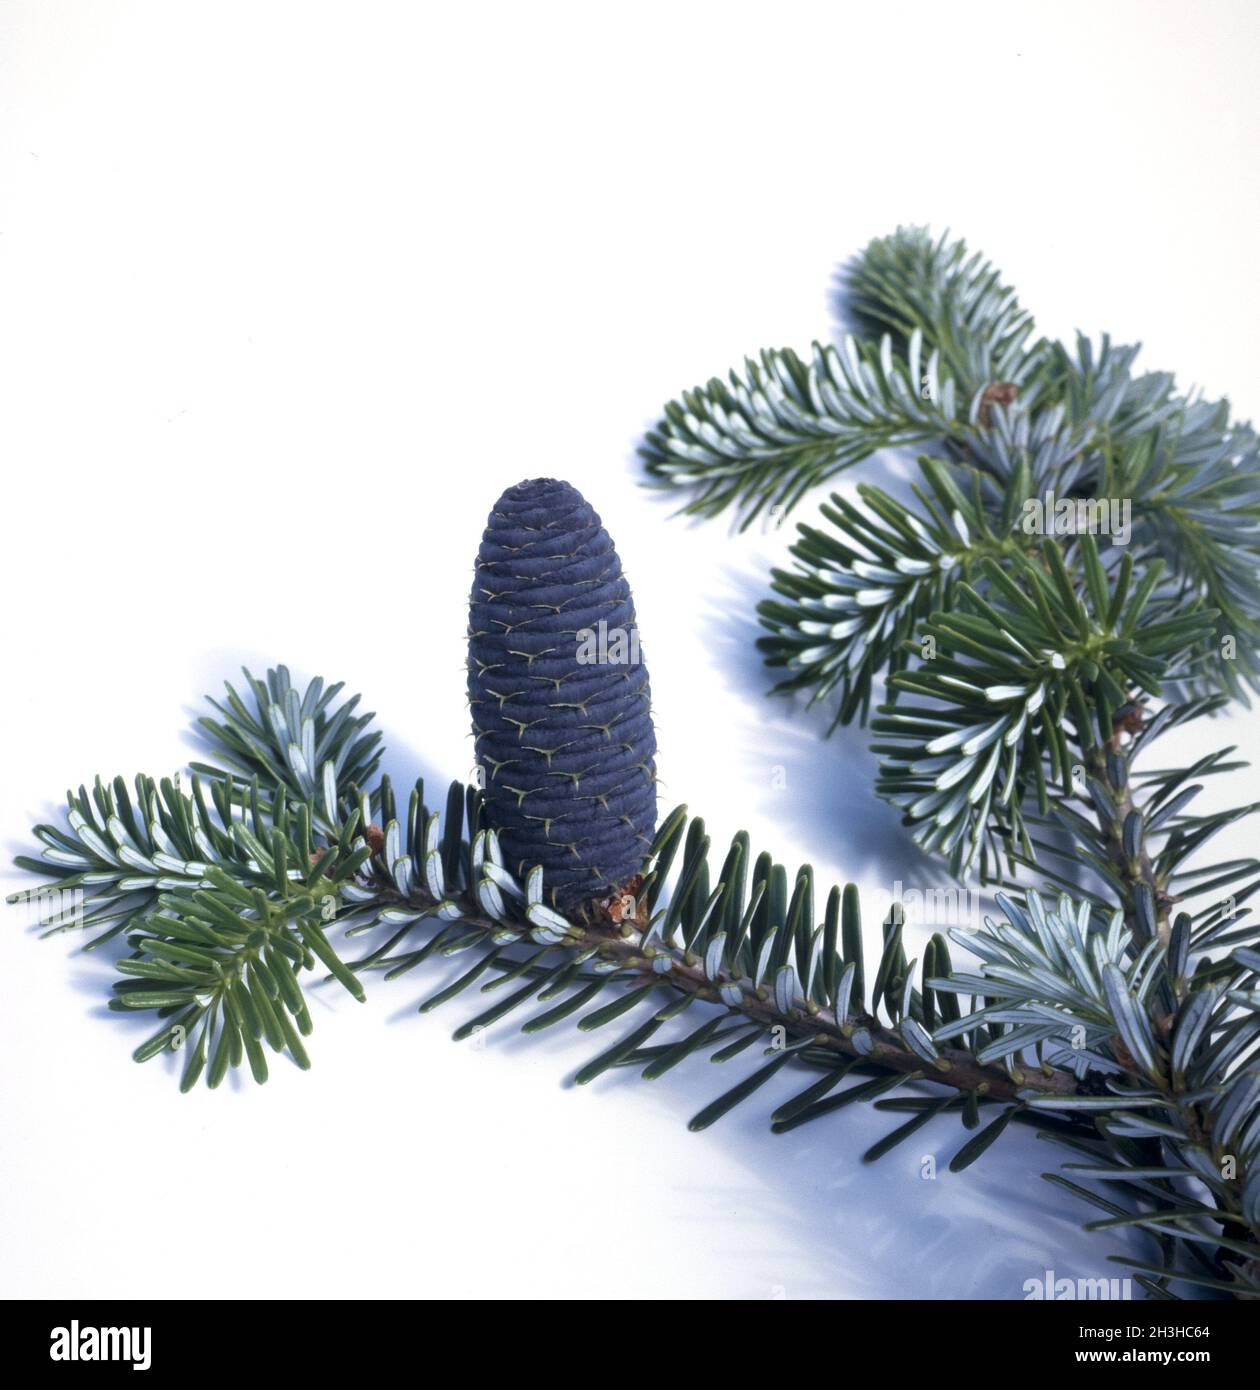 Korean fir, Fir, Abies koreana Stock Photo